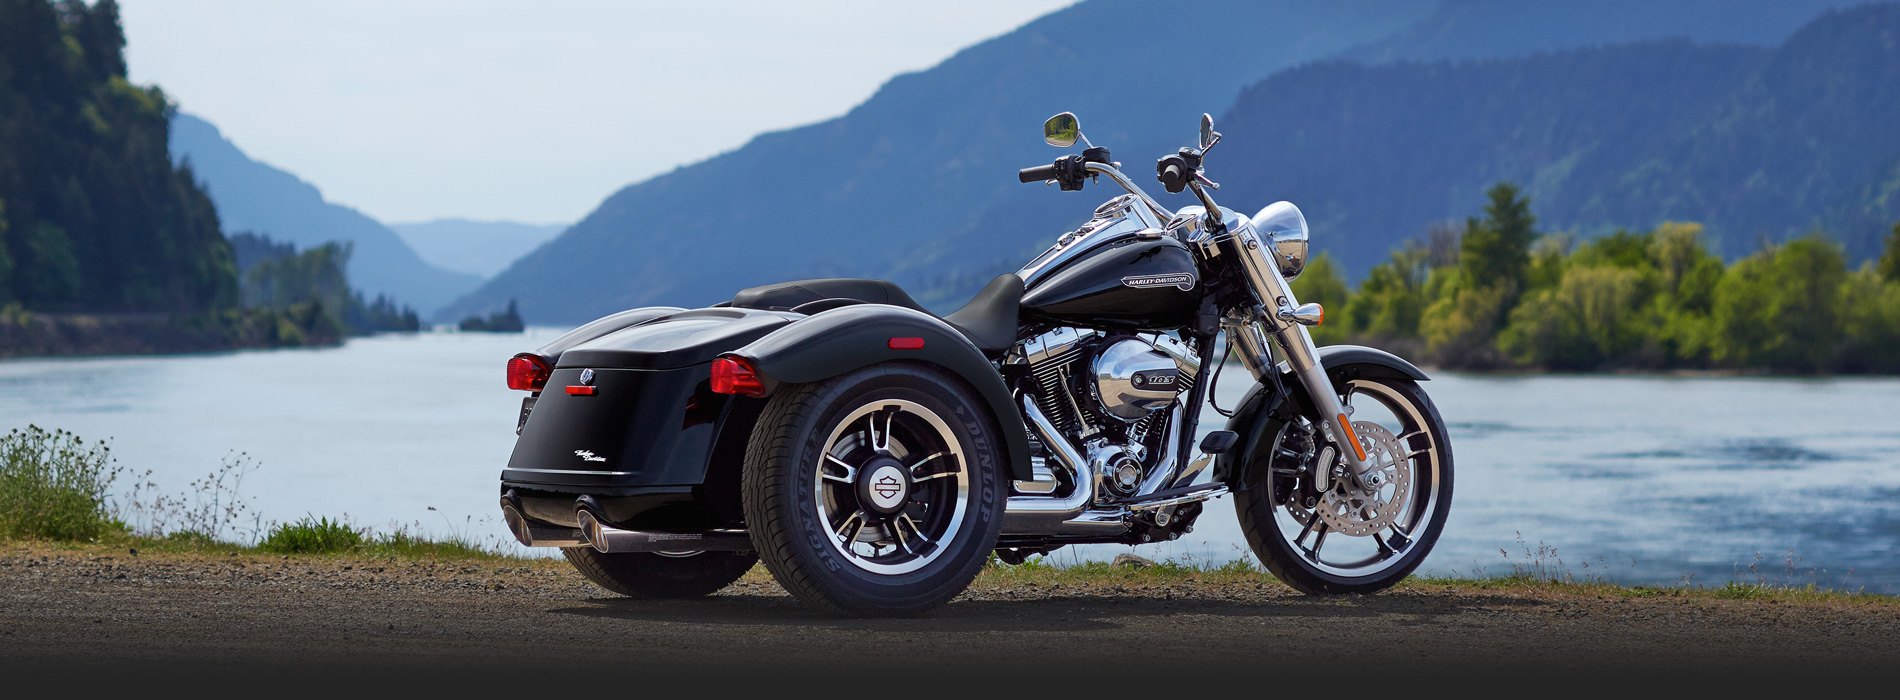 Harley-Davidson Freewheeler Backgrounds on Wallpapers Vista